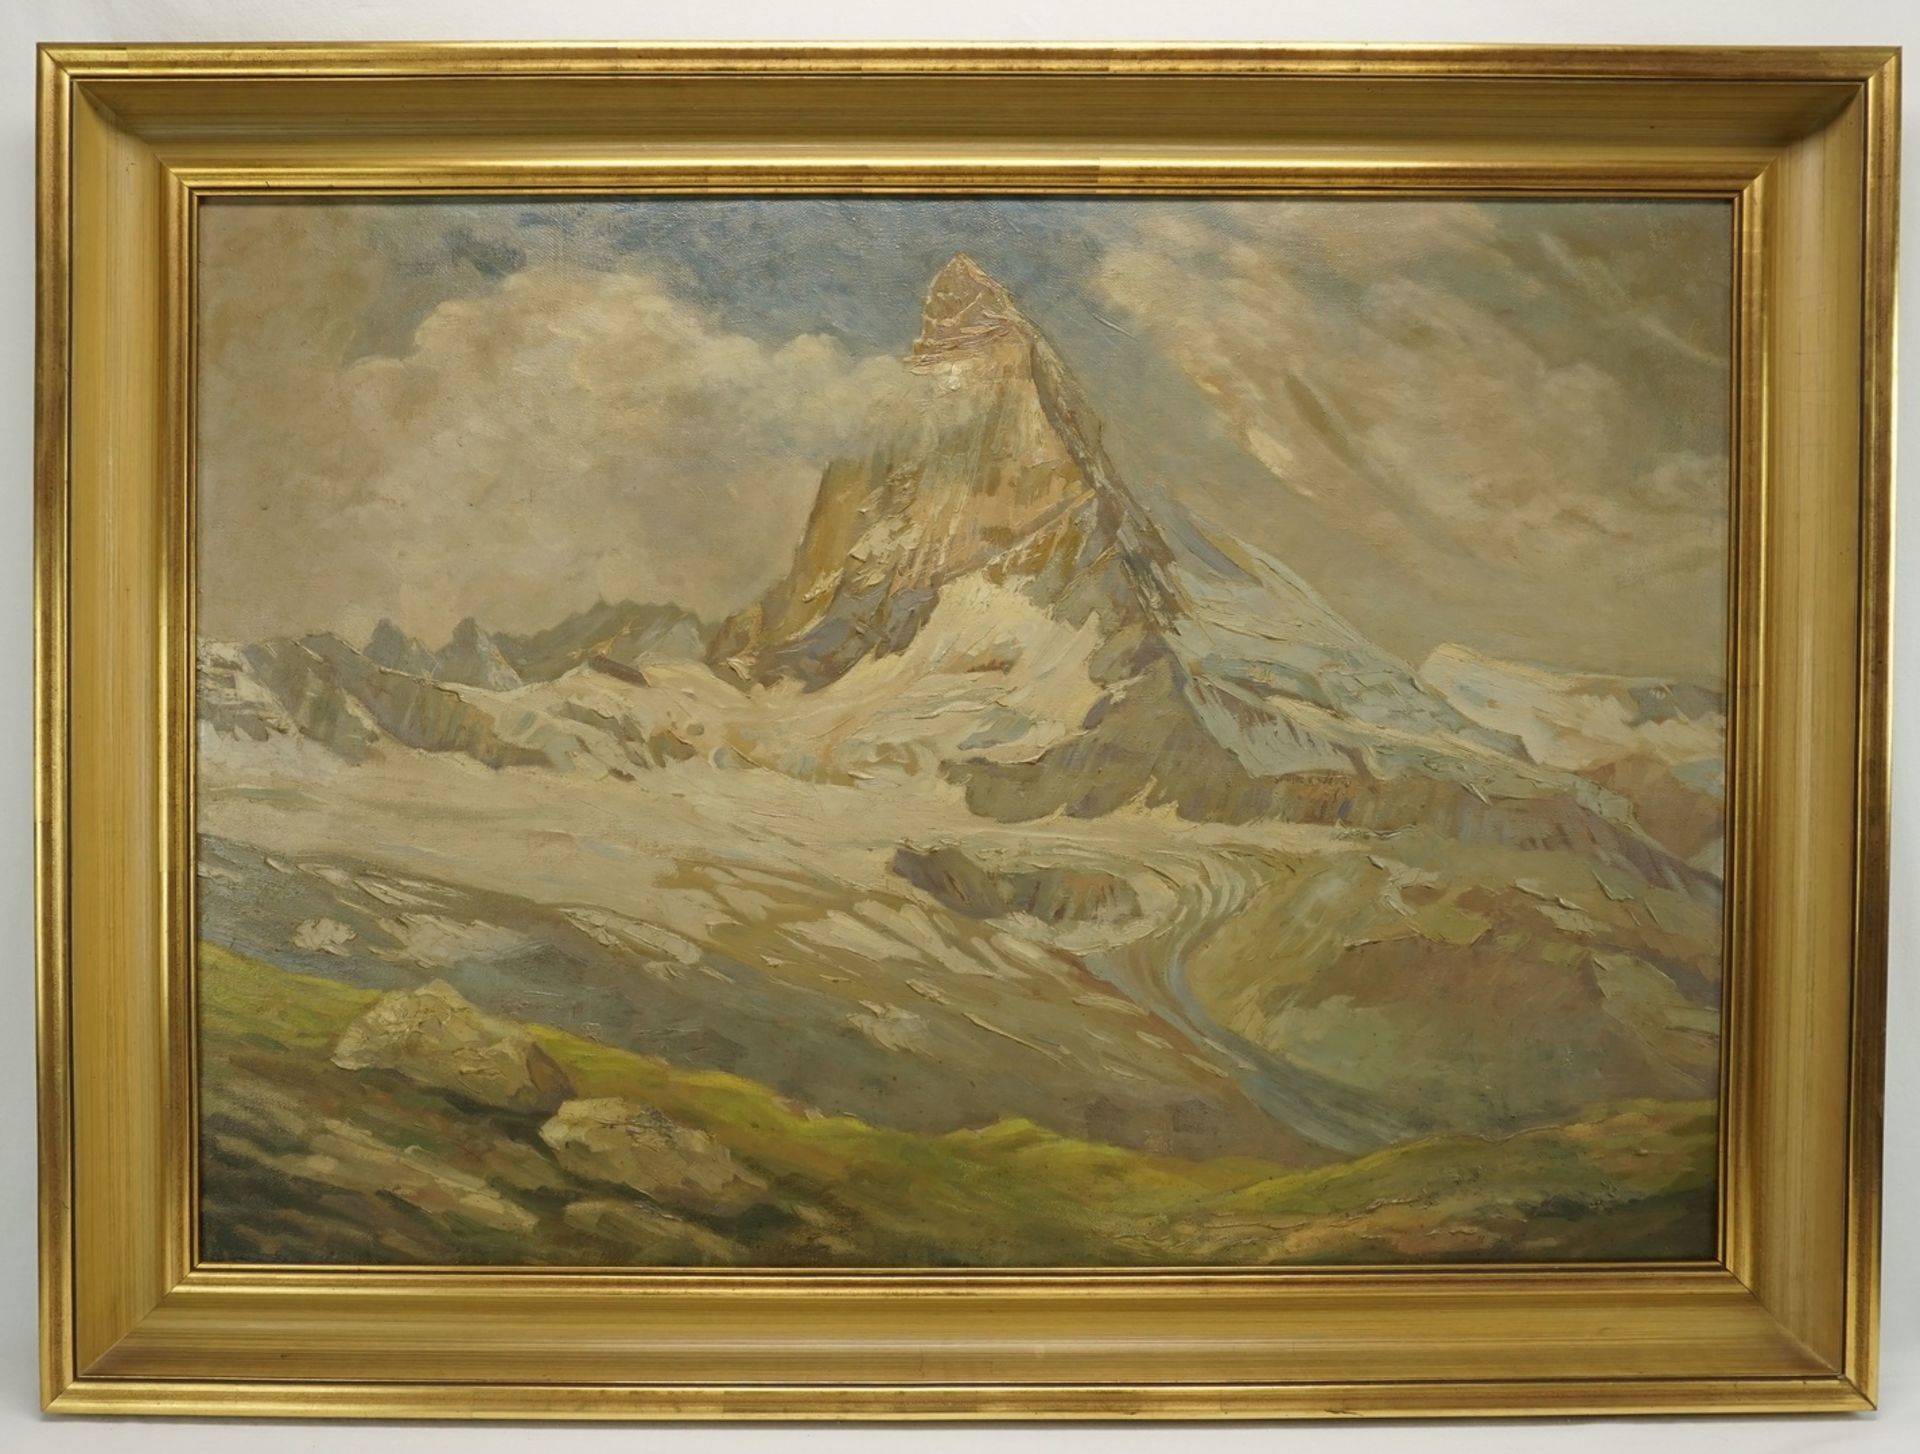 Landschaftsmaler, "Matterhorn"Öl/Leinwand, unsigniert, guter Zustand, 71 x 101 cm (HxB), gerahmt, - Bild 2 aus 3